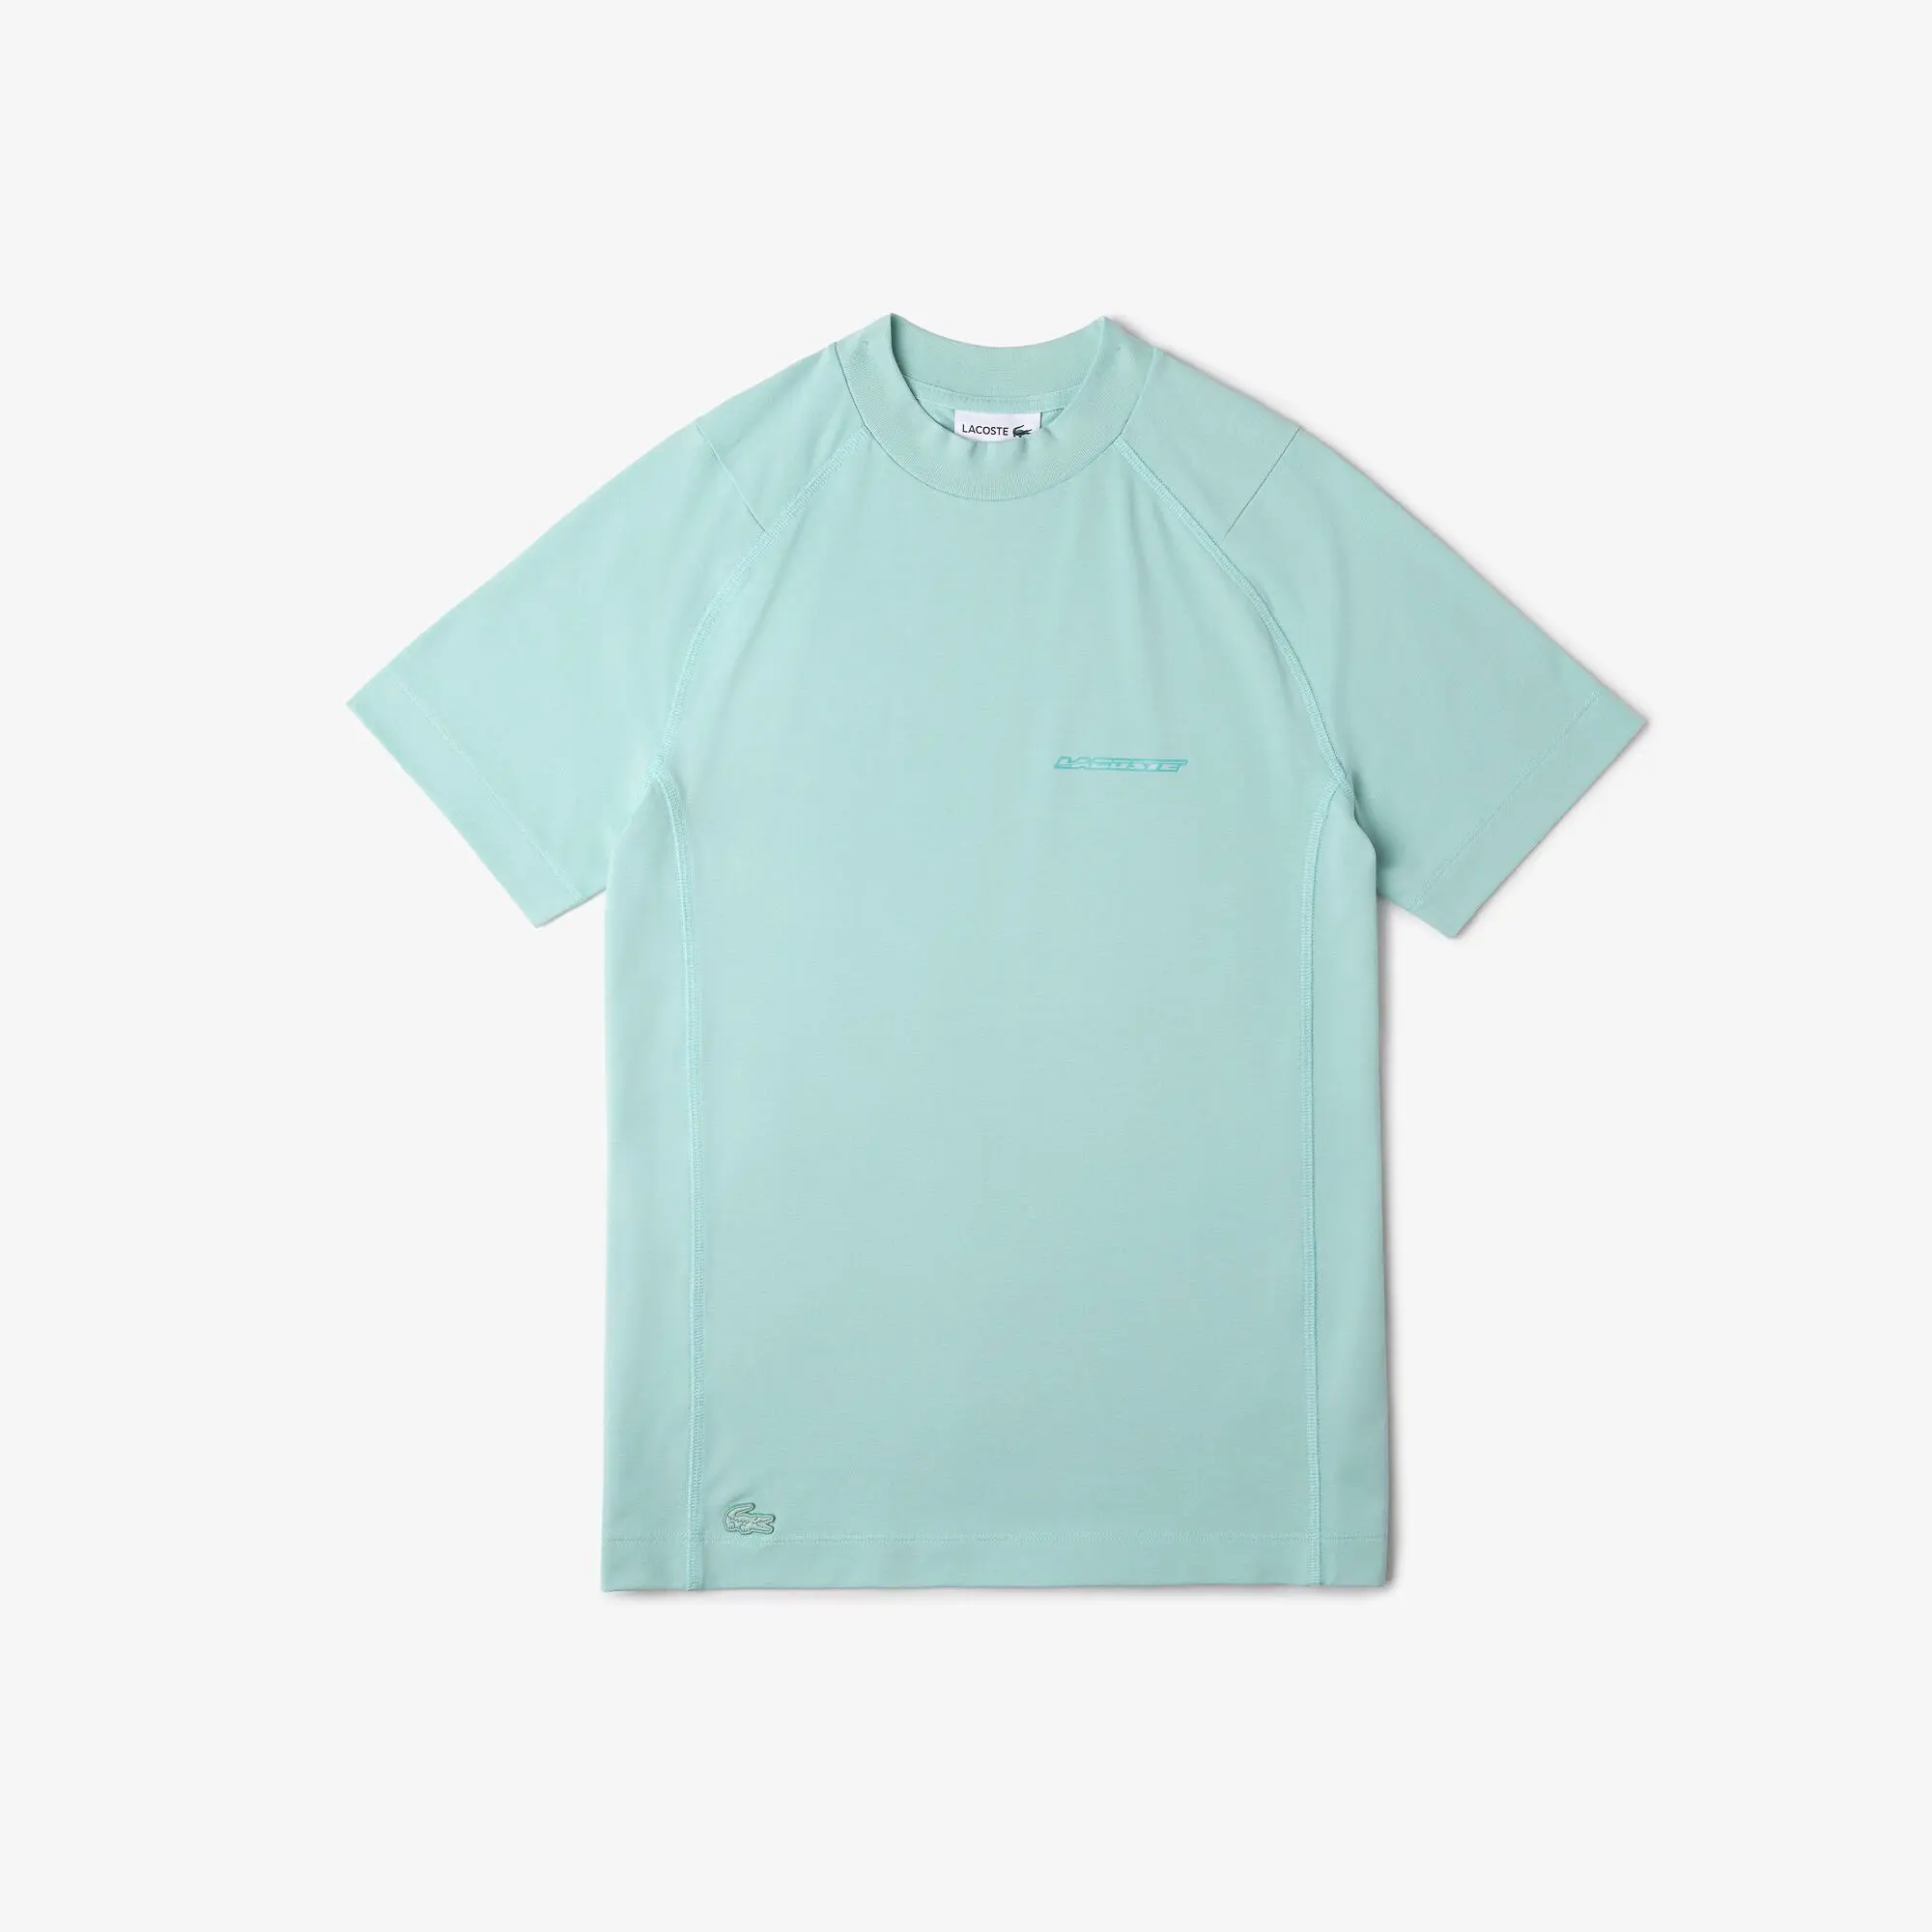 Lacoste Men’s Lacoste Slim Fit Organic Cotton Piqué T-shirt. 2